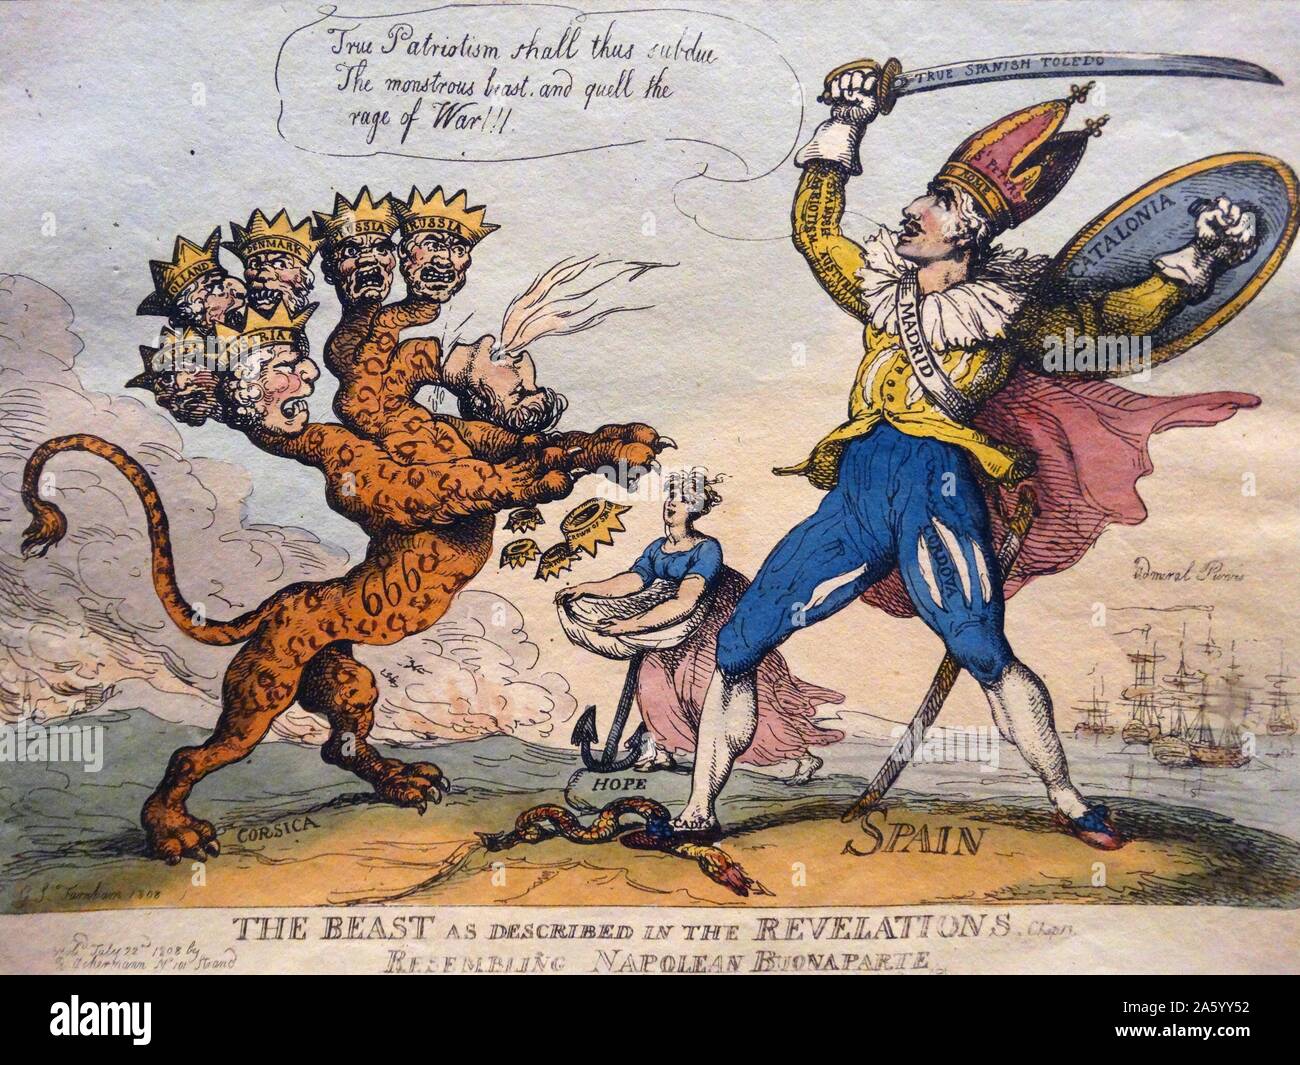 Handkolorierten Radierung mit dem Titel "The Beast als beschrieben in den Offenbarungen" von Thomas Rowlandson (1757-1827), britischer Maler und Karikaturist. Vom Jahre 1808 Stockfoto